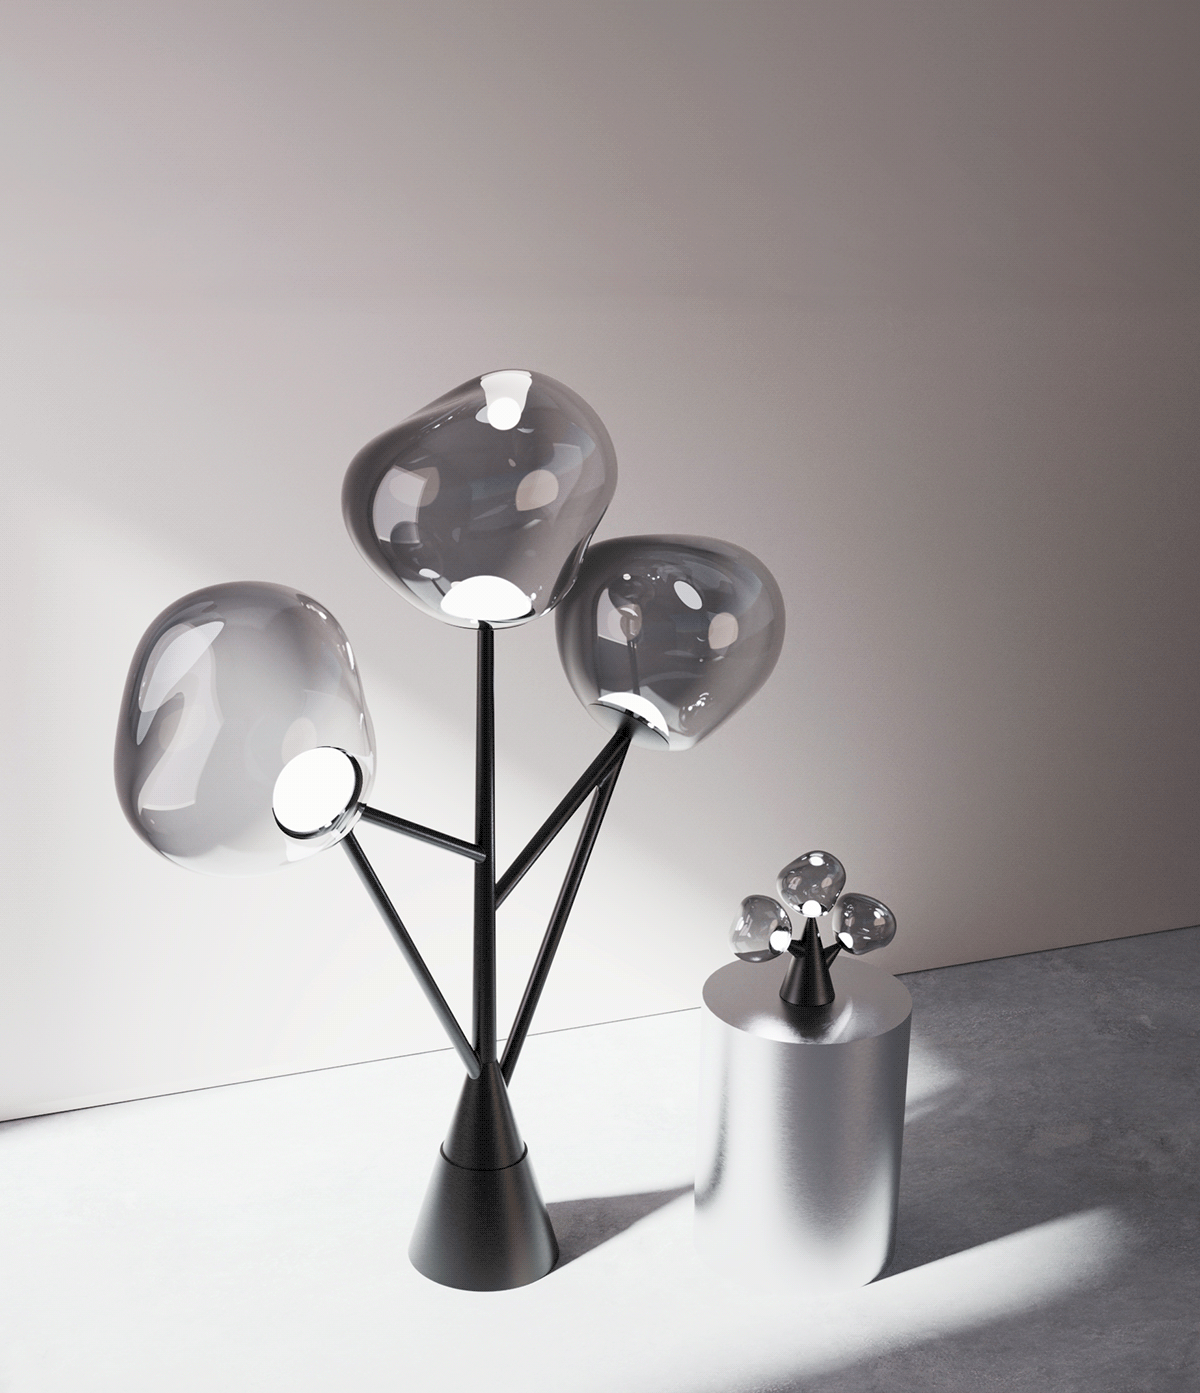 Lamp industrial design  lamp design tom dixon Render fourniture design interior design  product design  CMF Design